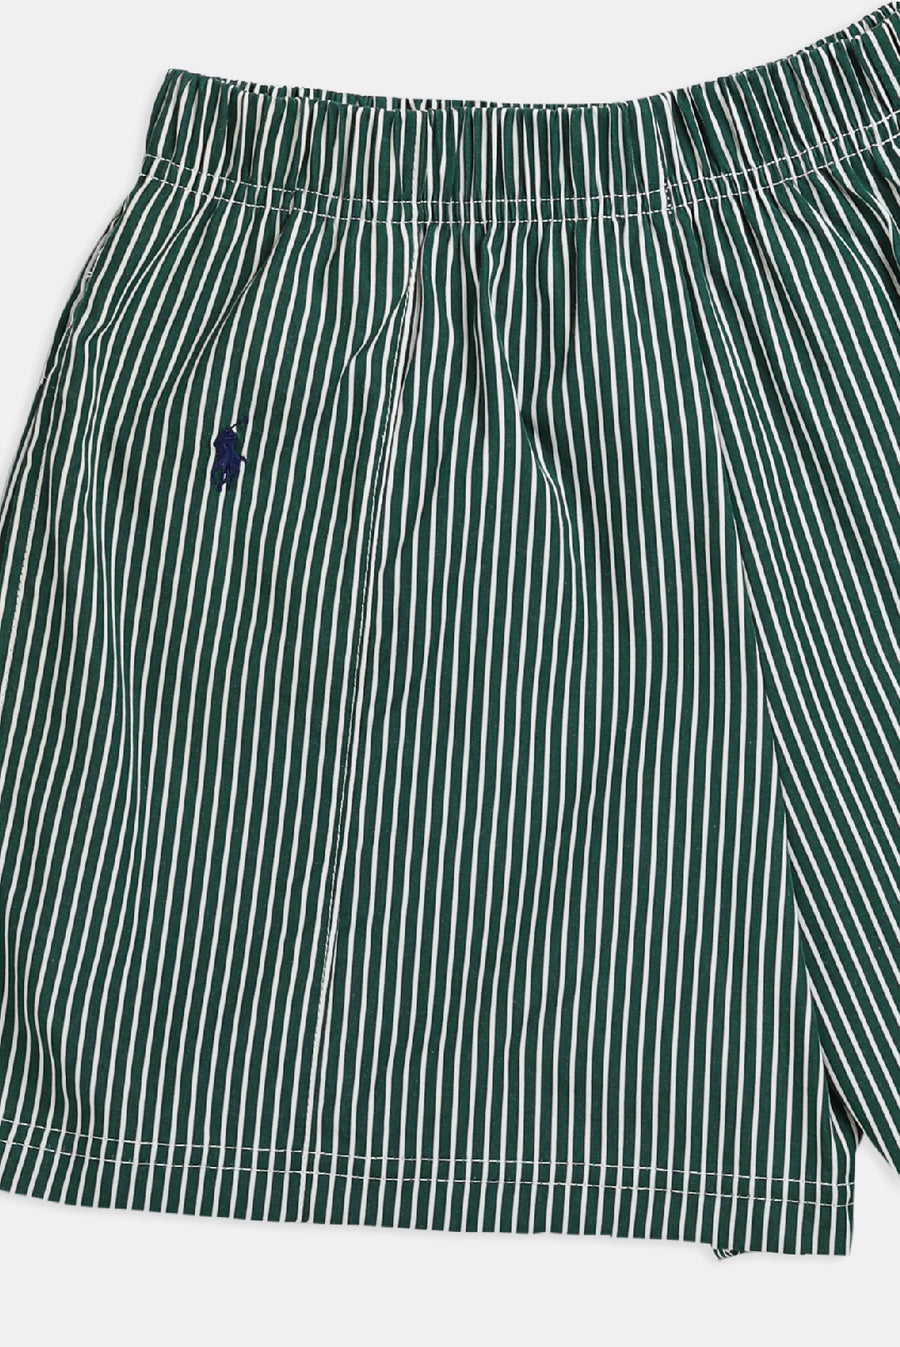 Unisex Rework Polo Oxford Boxer Shorts - M